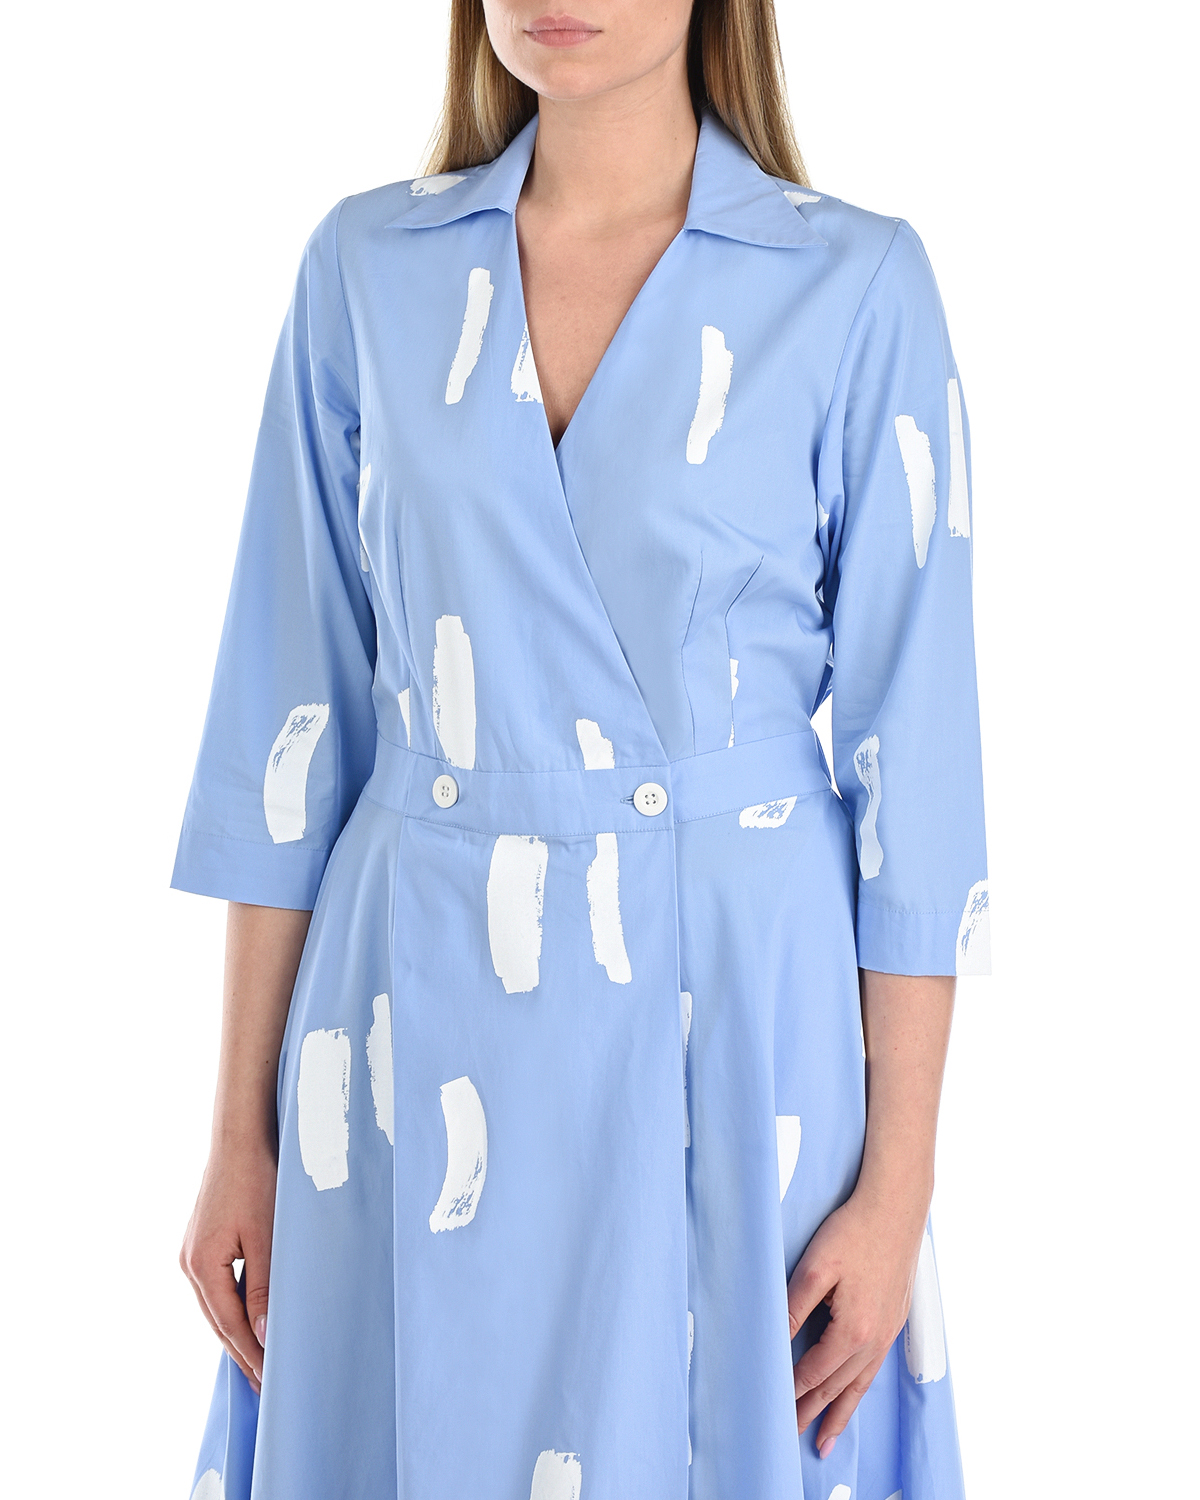 Голубое платье с абстрактным принтом LOVE BIRDS, размер 40, цвет голубой - фото 6